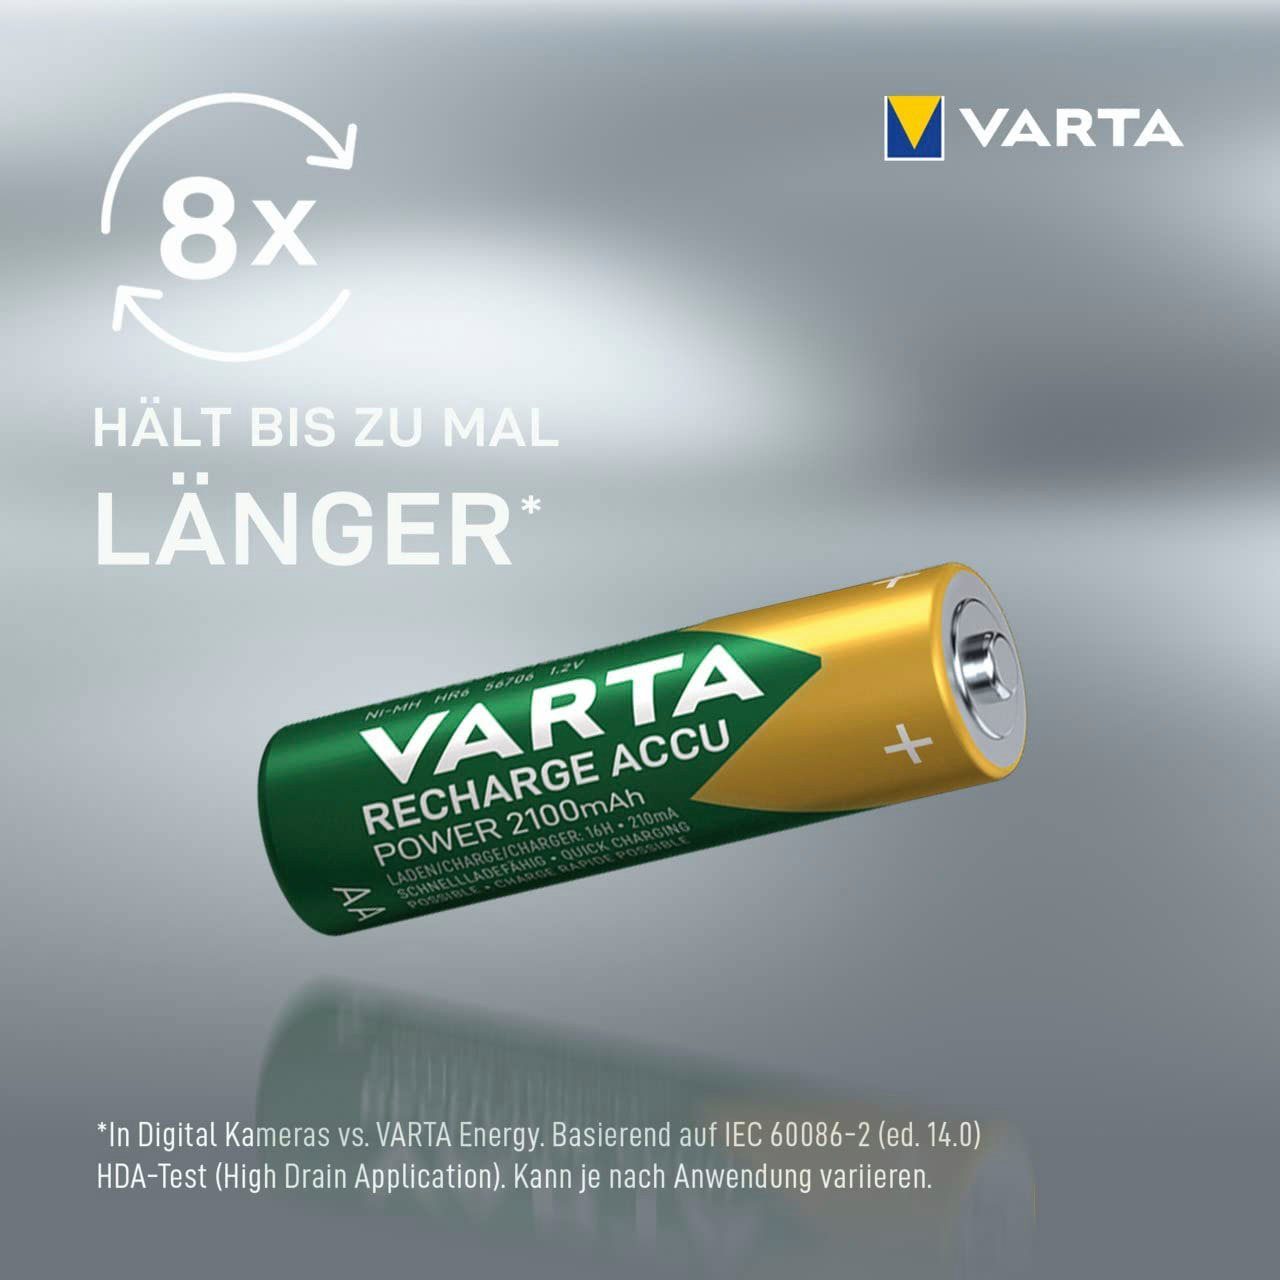 VARTA Recharge Accu Recycled mAh St) (6 2100 Mignon mAh AA Akkupacks 2100 AA